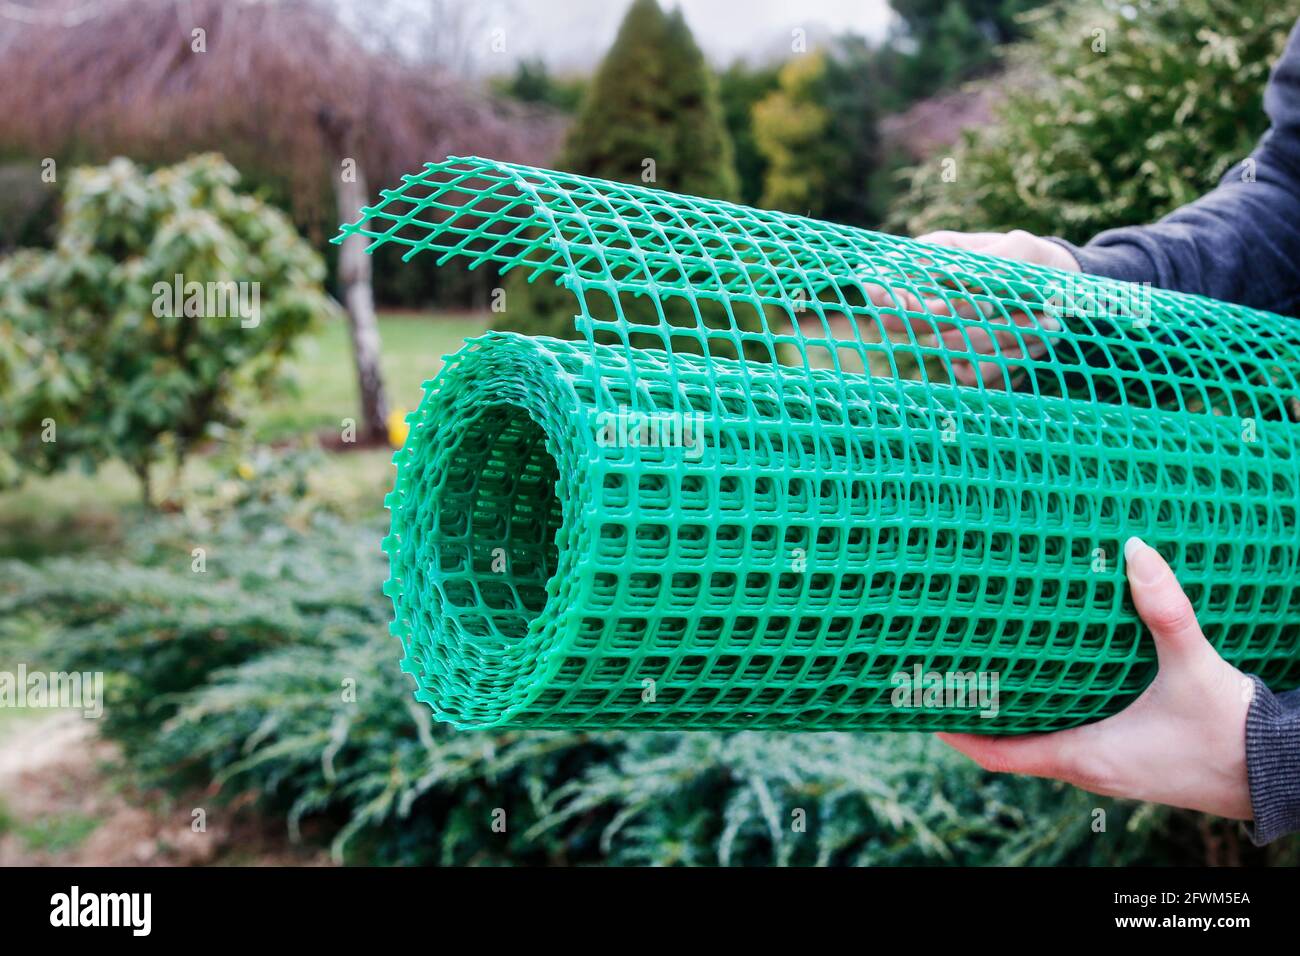 Une femme tient un filet en plastique qui est utile dans le jardinage.  Passe-temps dans le jardin Photo Stock - Alamy